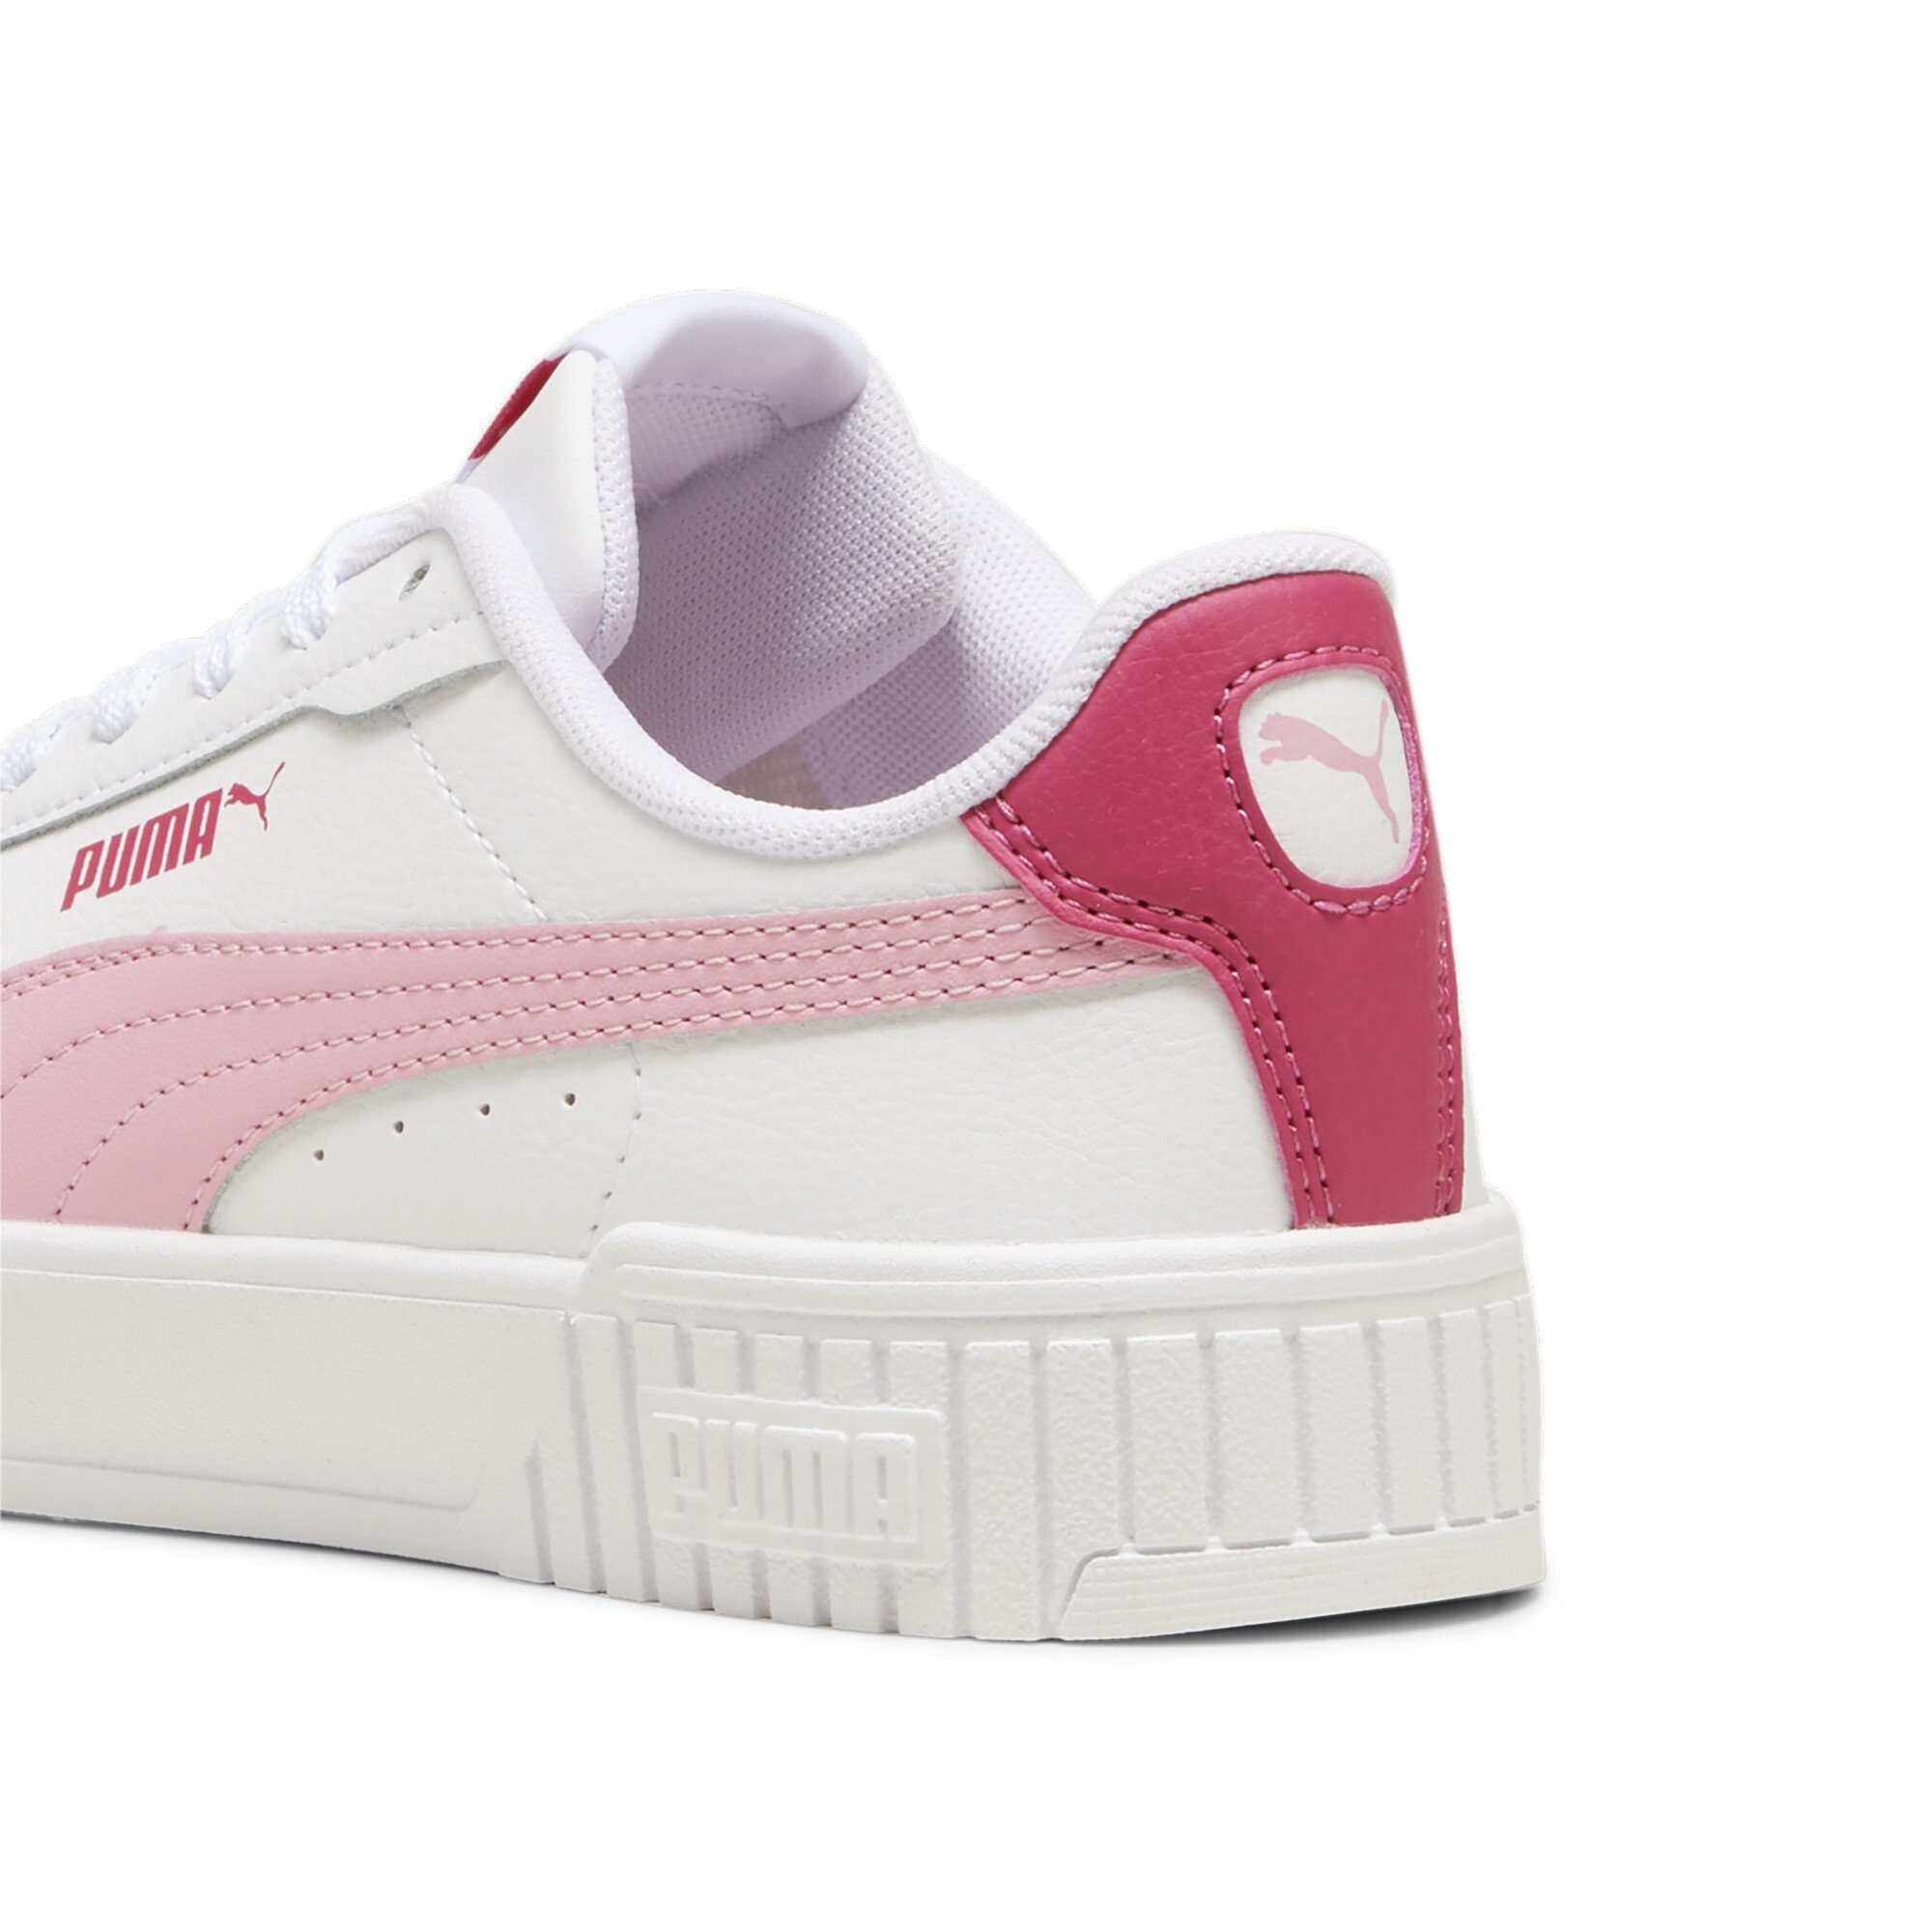 2.0 PUMA Sneaker Jugendliche Lilac Carina Pink White Sneakers